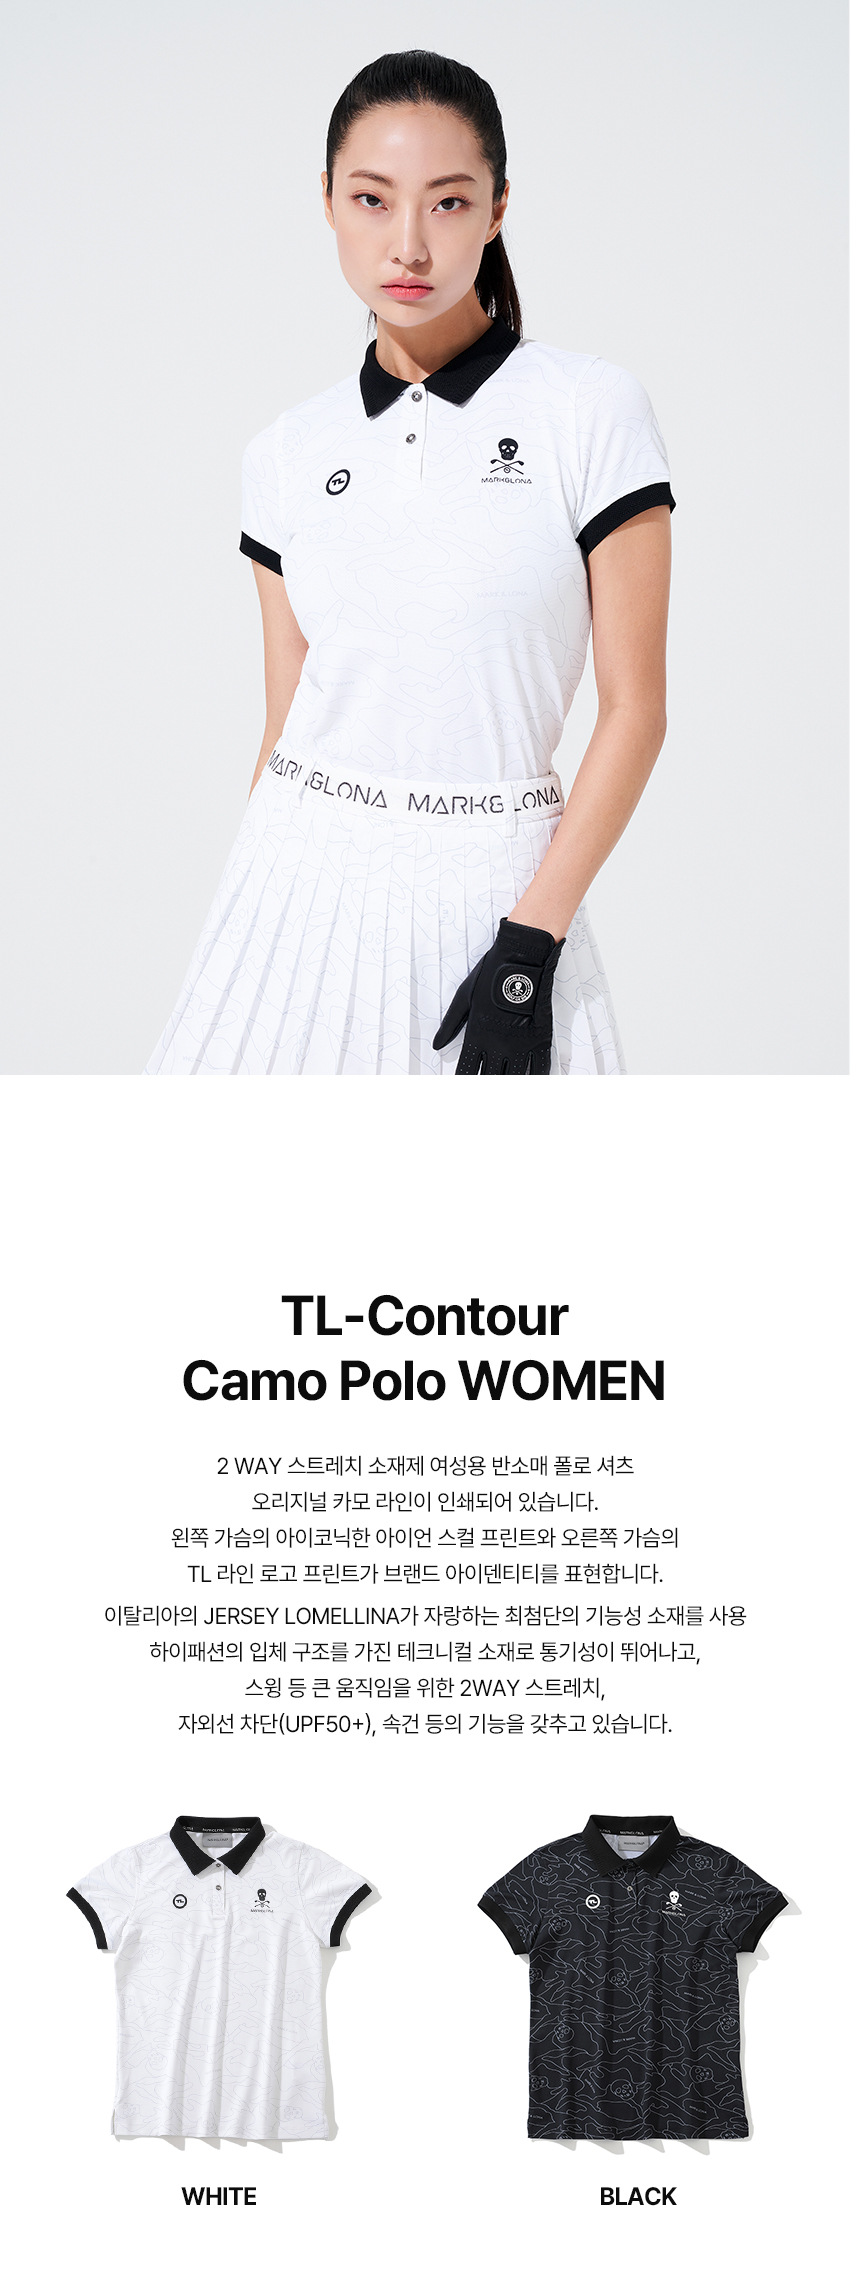 05.TL_Contour_Camo_Polo_WOMEN_01.jpg